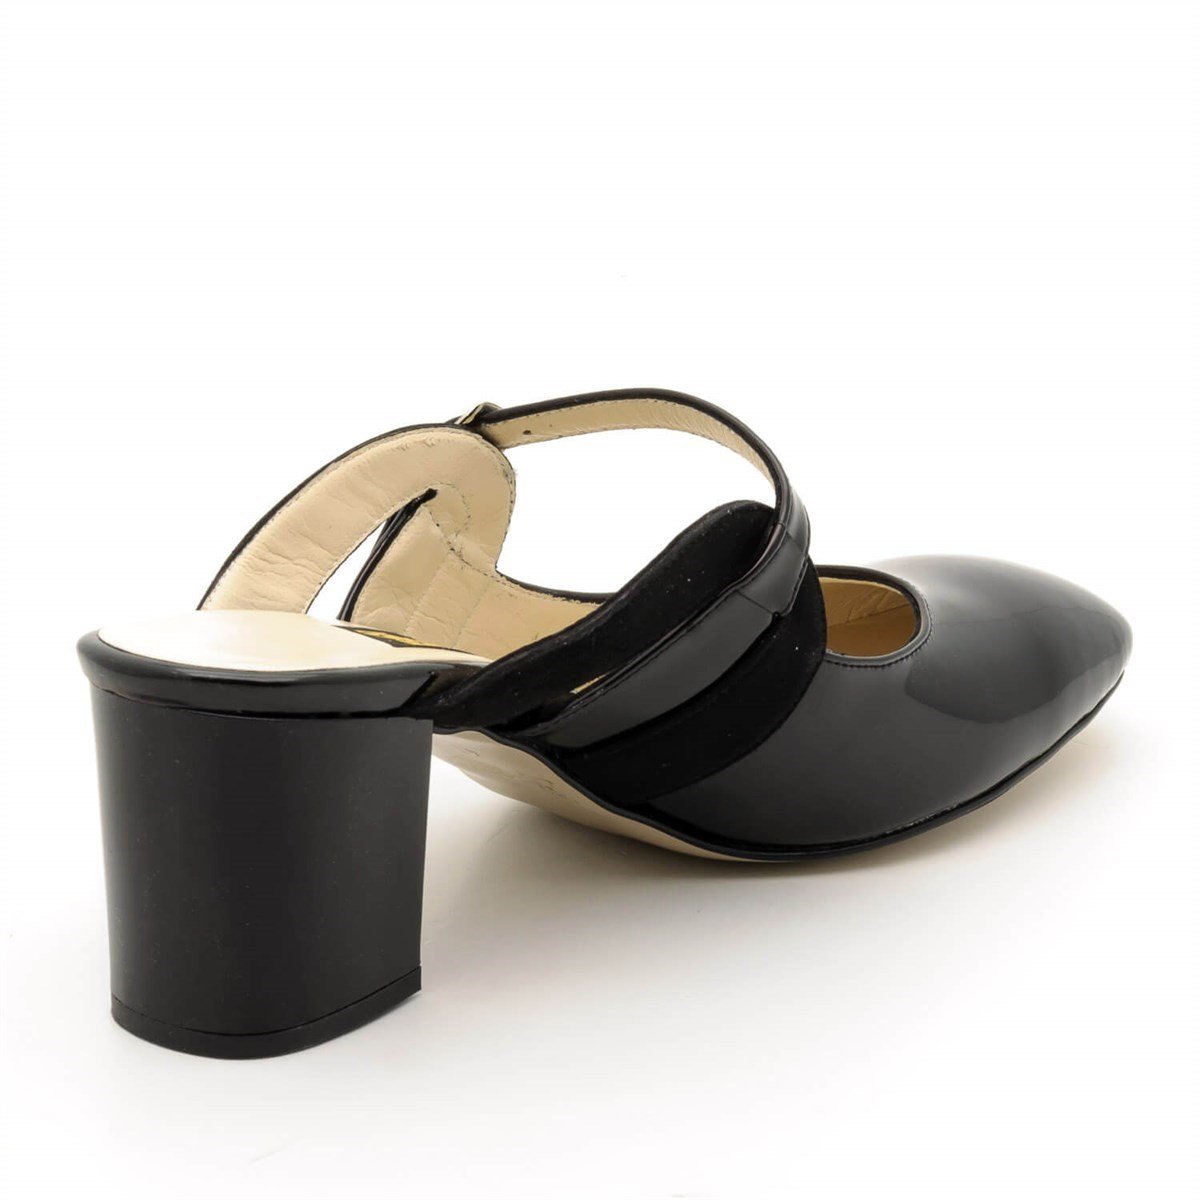 Büyük Numara Bayan Yazlık Terlik Sandalet Açık Ayakkabı Modelleri En uygun  Fiyat Kapıda Ödeme